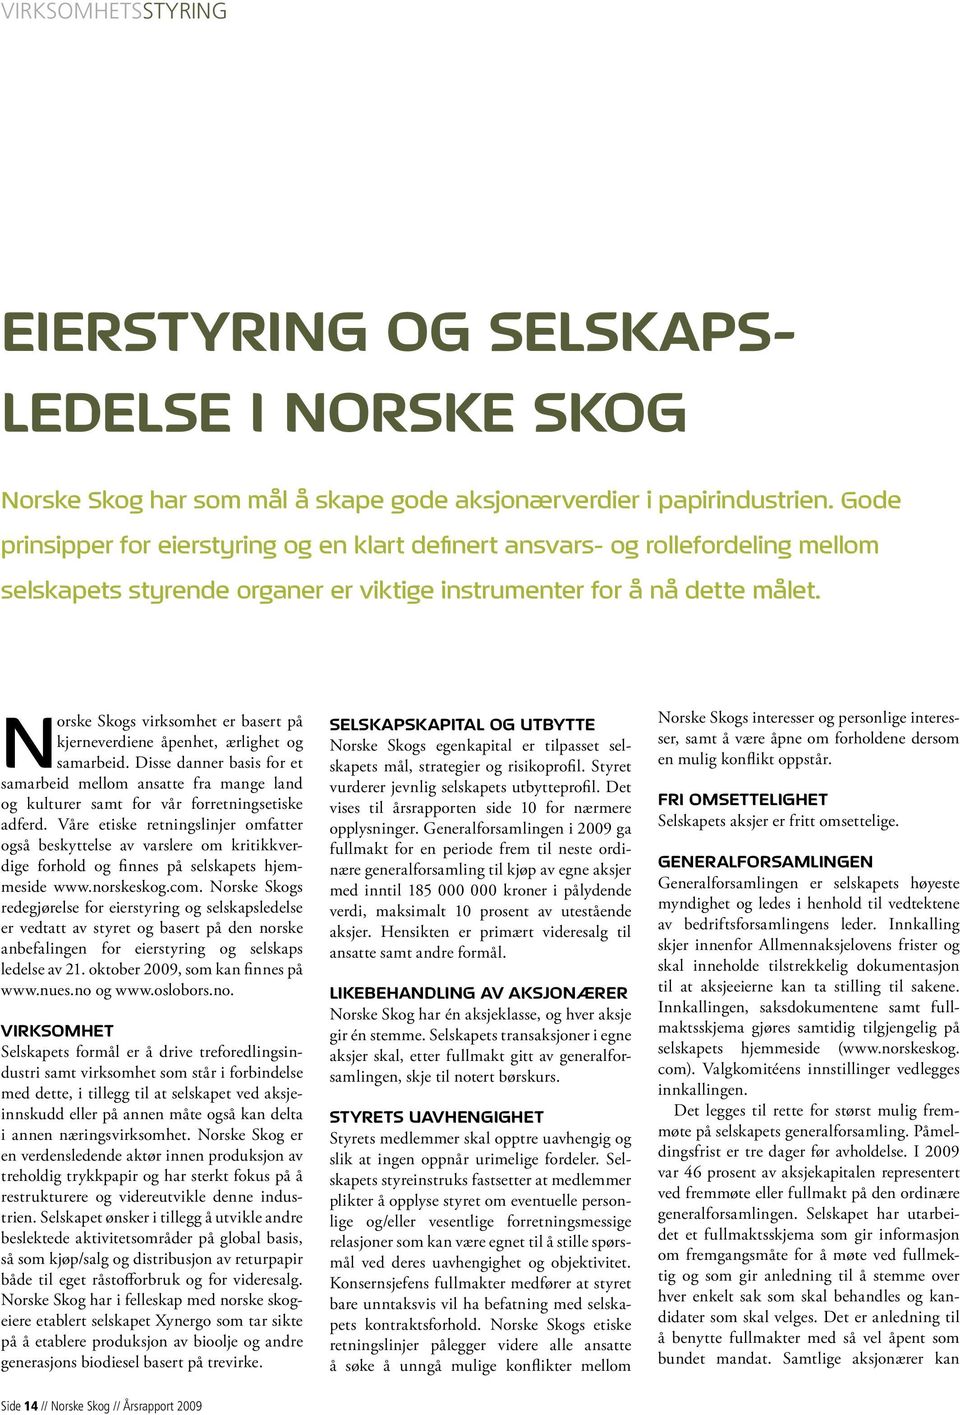 Norske Skogs virksomhet er basert på kjerneverdiene åpenhet, ærlighet og samarbeid. Disse danner basis for et samarbeid mellom ansatte fra mange land og kulturer samt for vår forretningsetiske adferd.